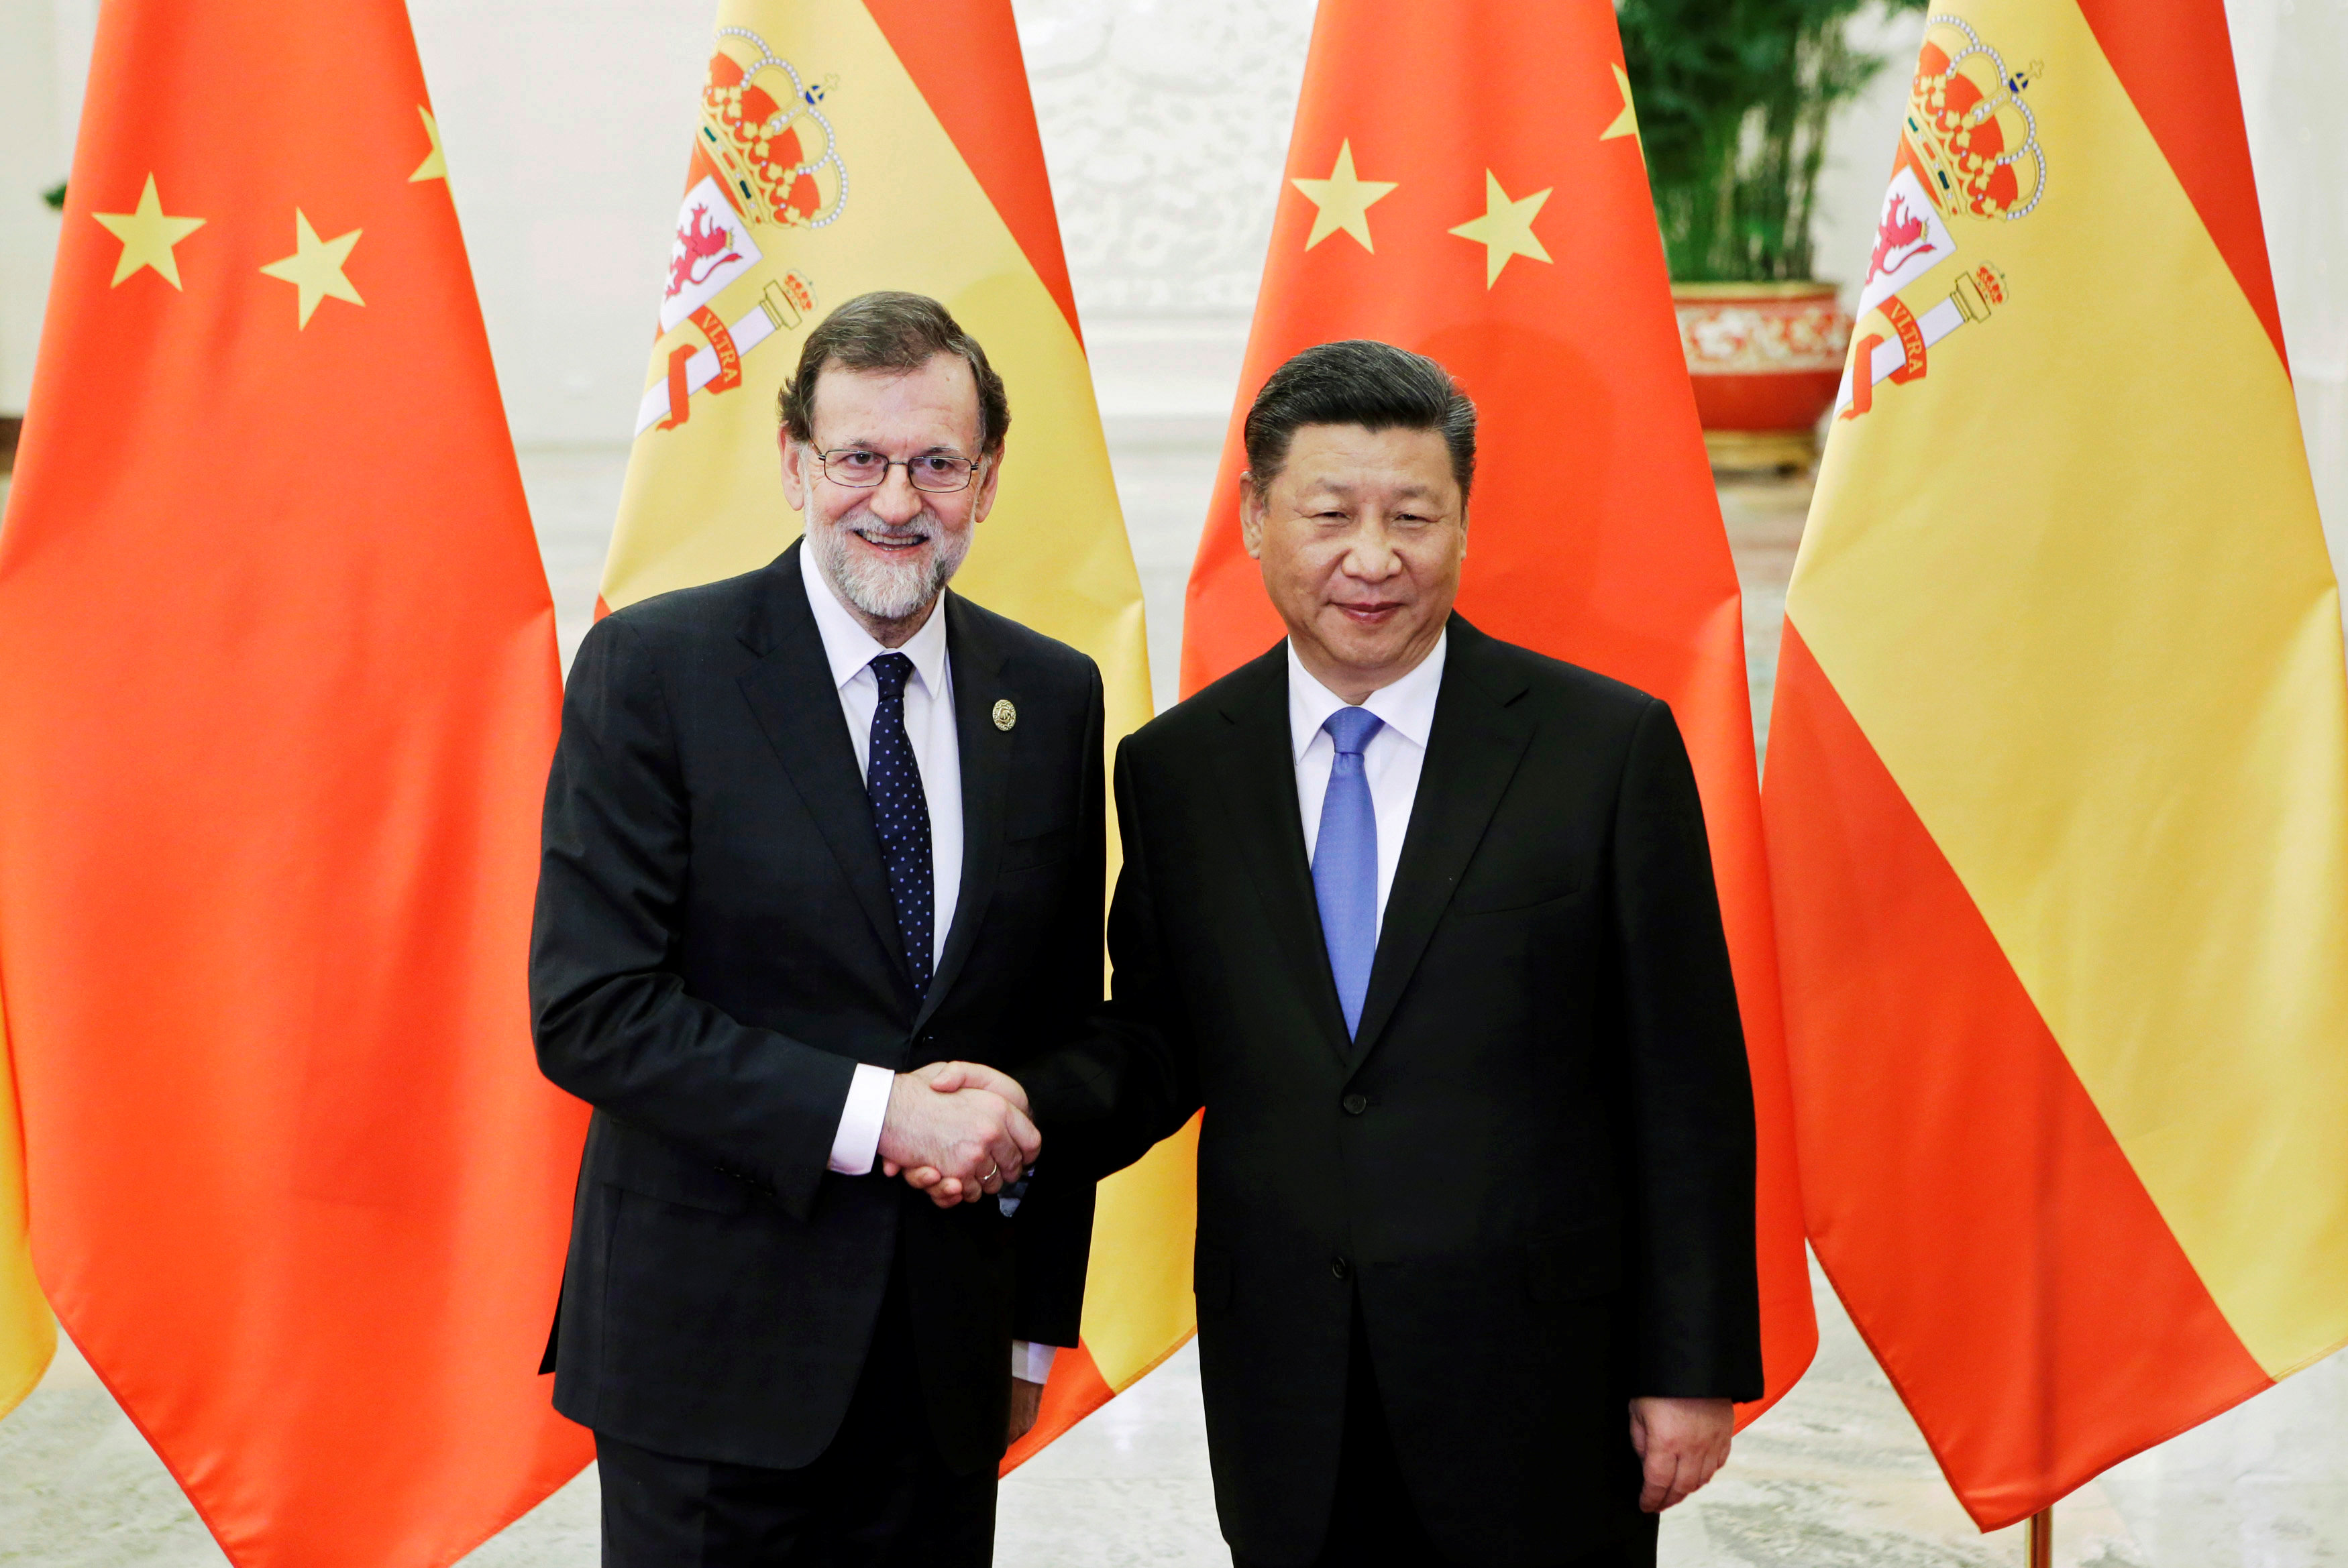 الرئيس الصينى يستقبل رئيس الوزراء الاسبانى بالطريق والحزام